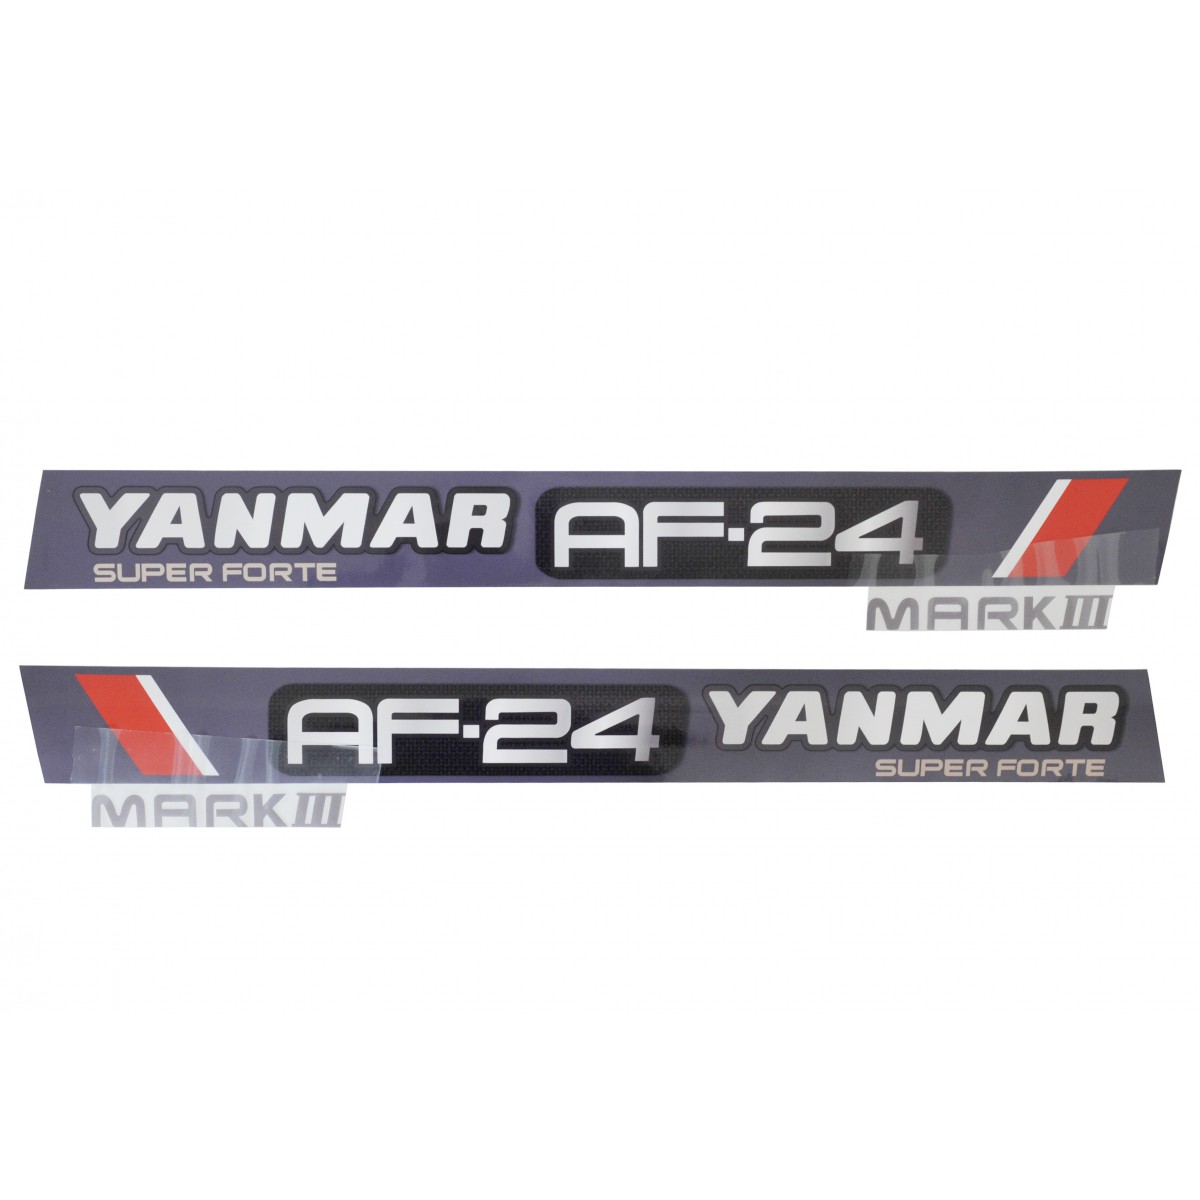 Autocollants Yanmar AF24 MARK III